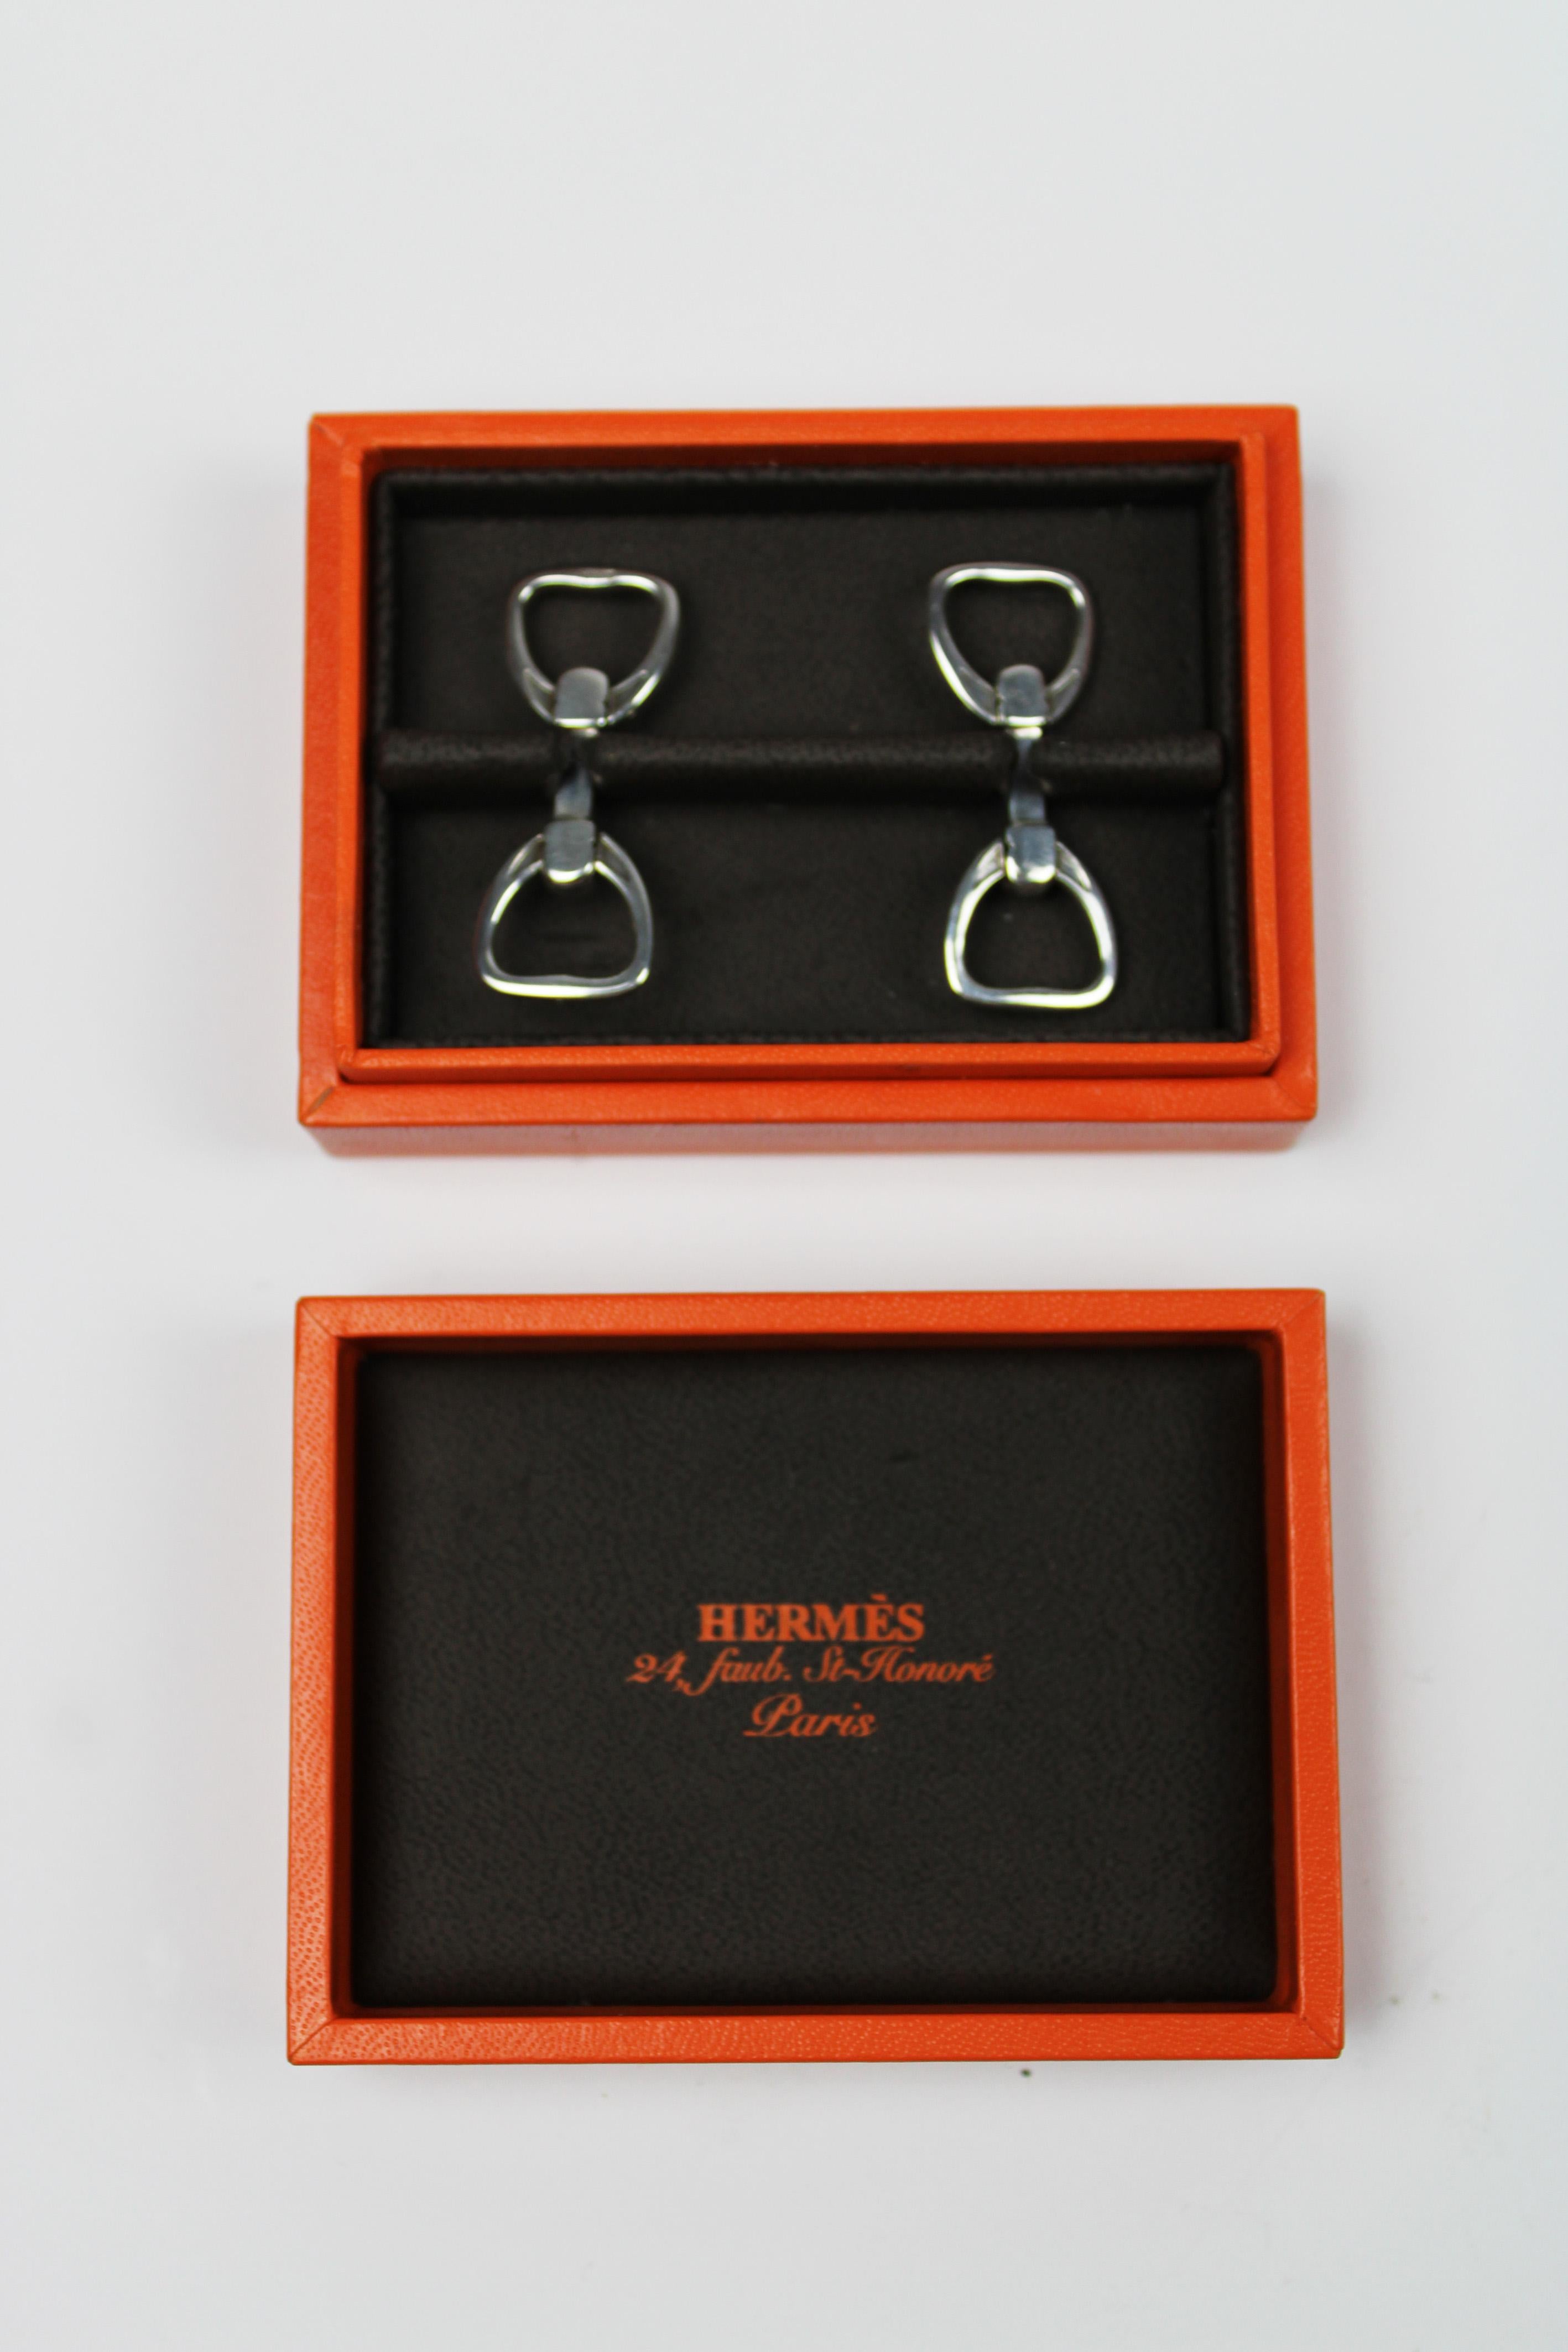 Wir präsentieren ein Paar exquisite Hermès Steigbügelmanschettenknöpfe aus Sterlingsilber, die in der Originalverpackung geliefert werden. Diese Manschettenknöpfe aus dem 21. Jahrhundert verkörpern die zeitlose Eleganz und die sorgfältige